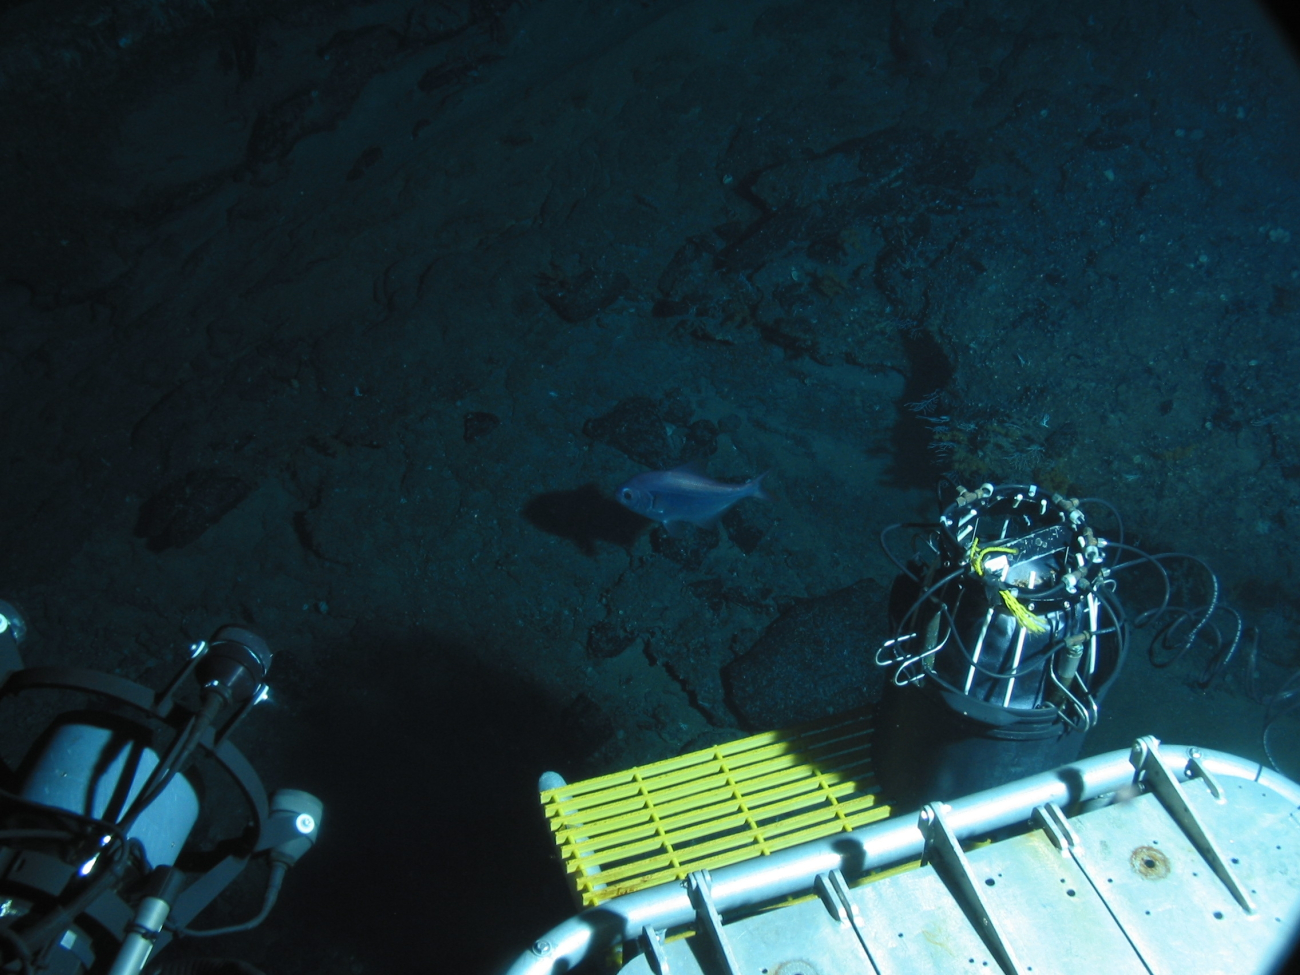 Dive at Wreckfish Cave